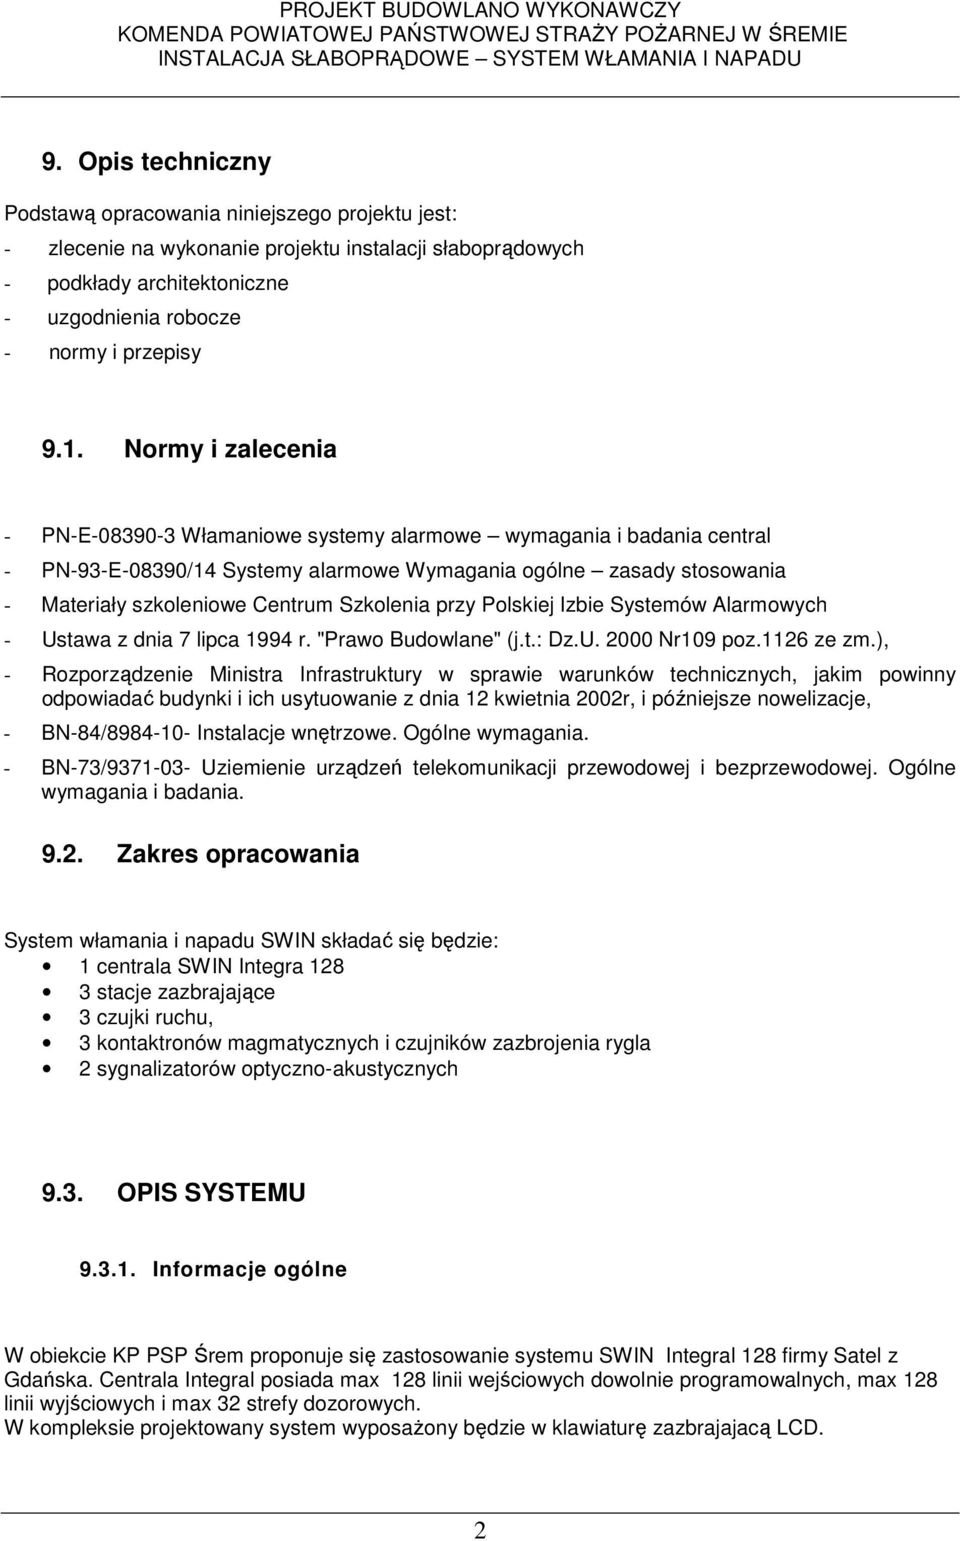 Szkolenia przy Polskiej Izbie Systemów Alarmowych - Ustawa z dnia 7 lipca 1994 r. "Prawo Budowlane" (j.t.: Dz.U. 2000 Nr109 poz.1126 ze zm.